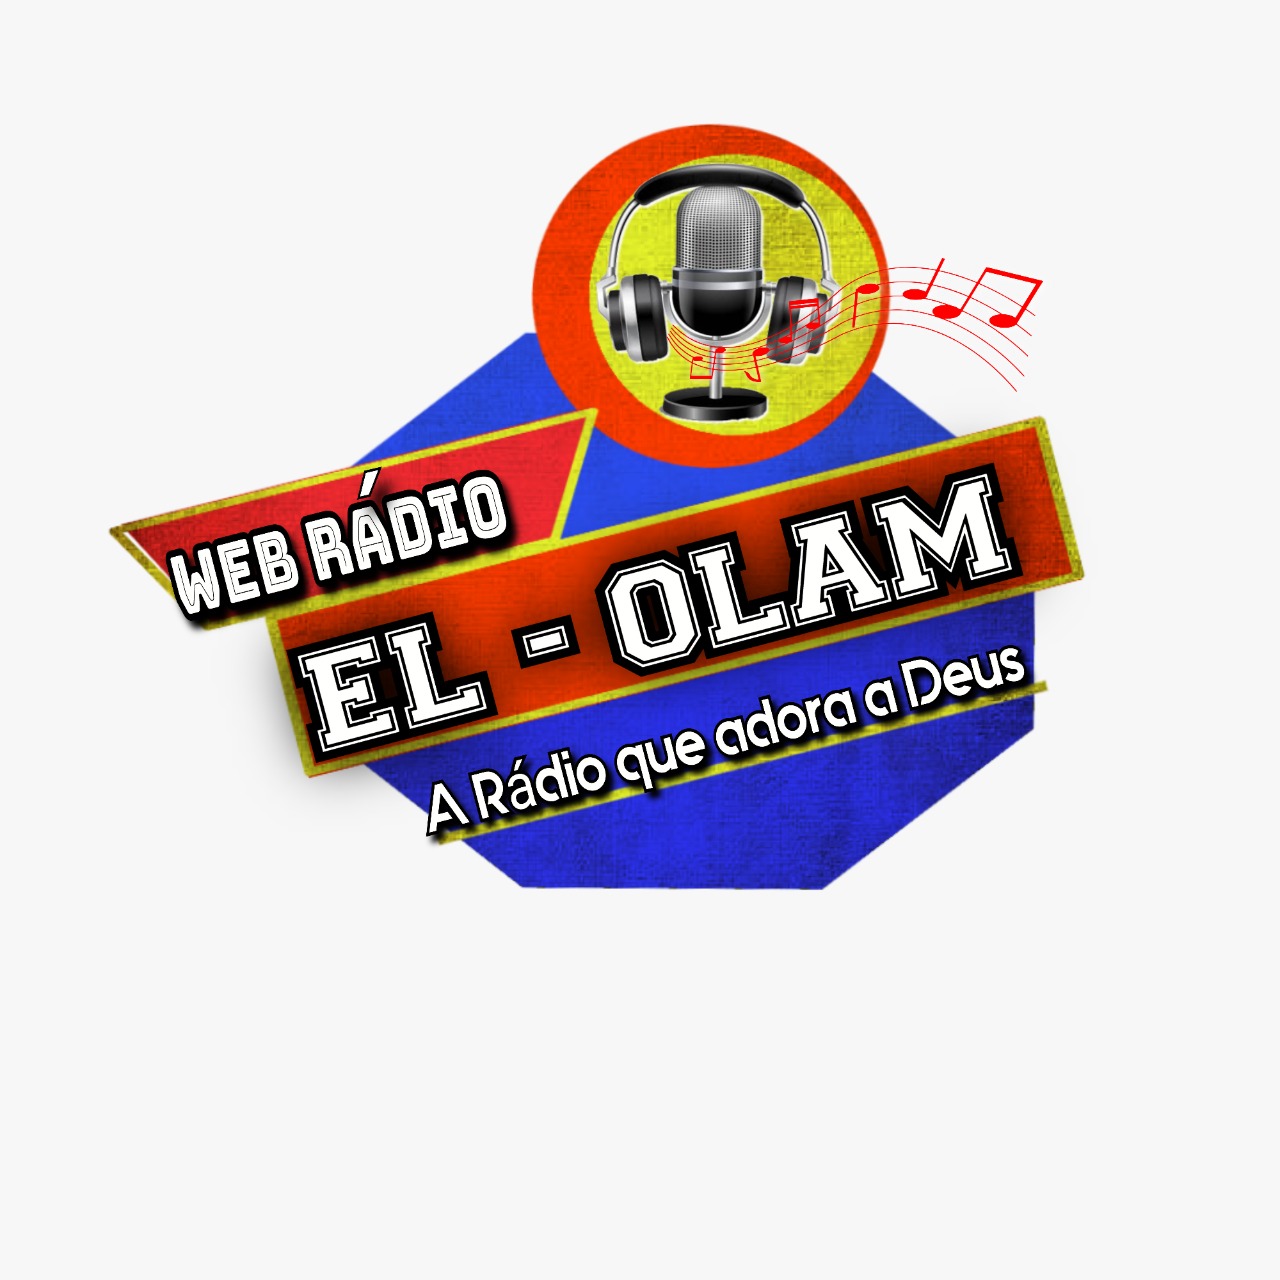 Rádio TV El-Olam